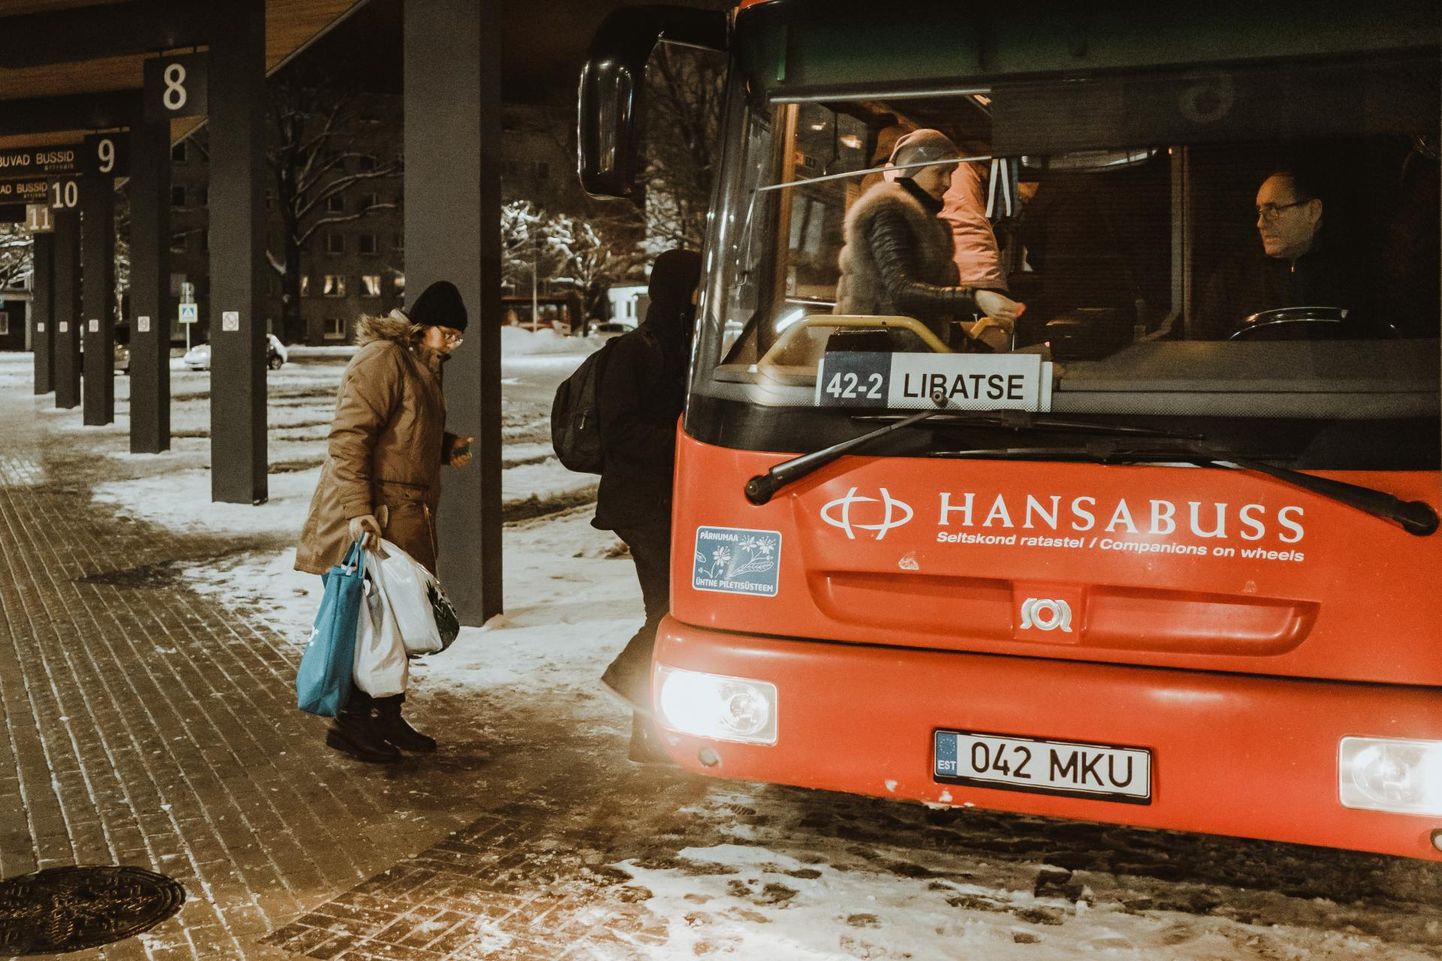 Pärnu bussijaamast Libatsesse väljuv maabuss nr 42-2.